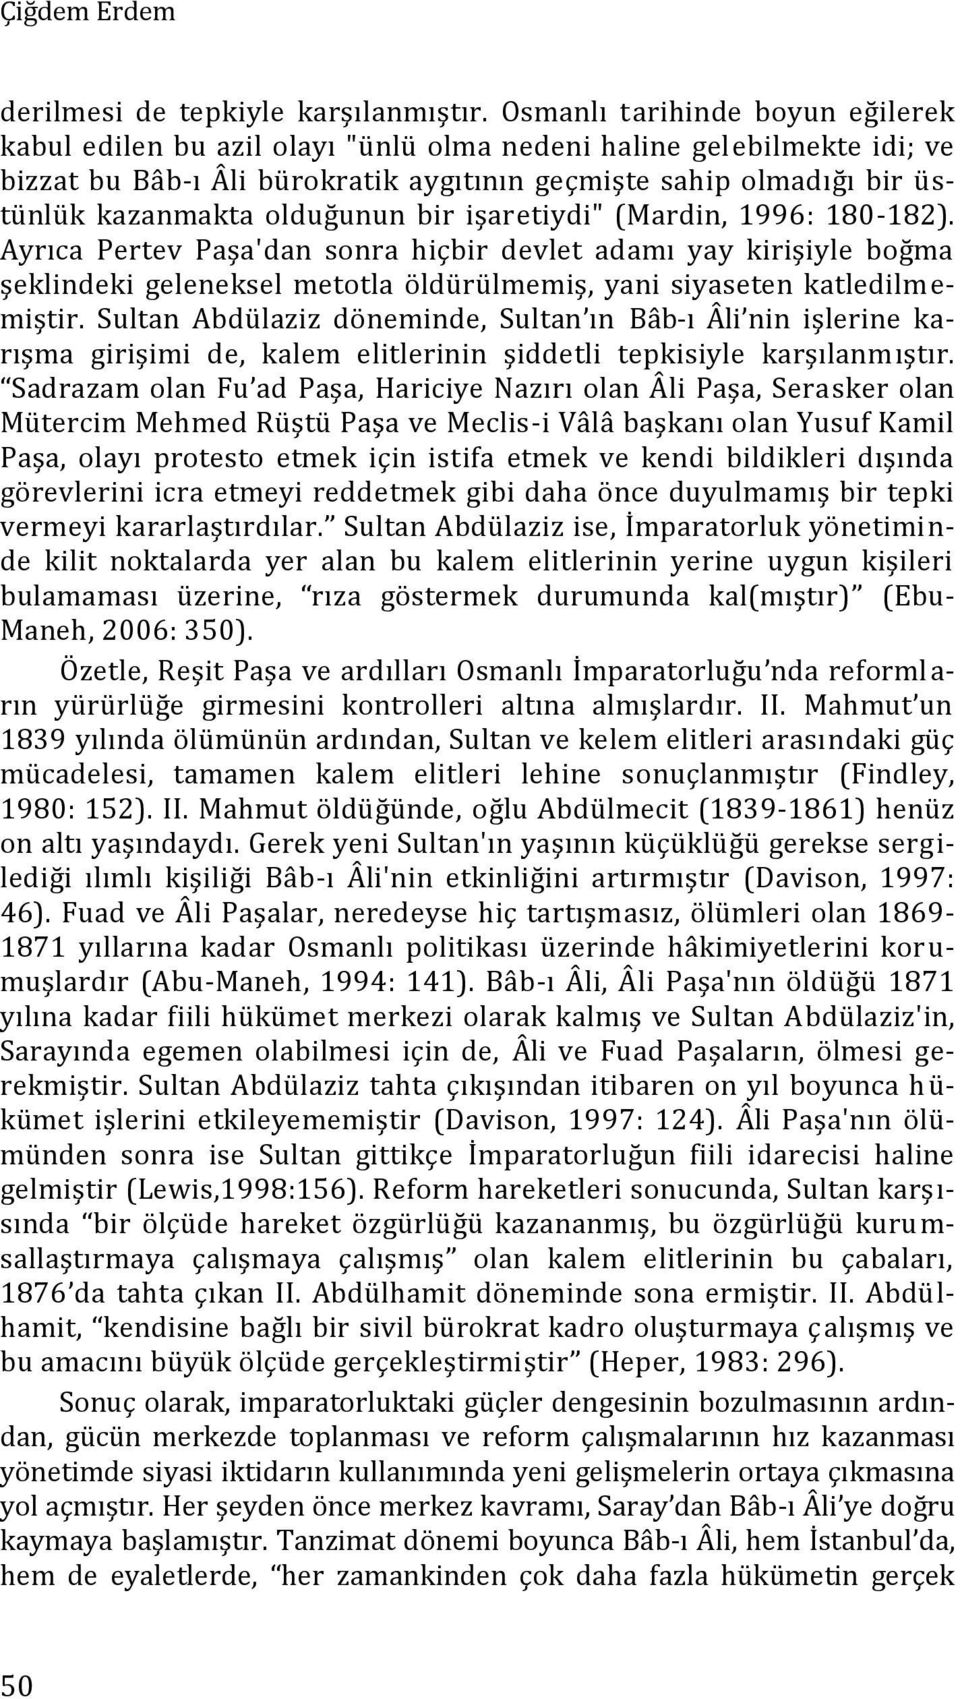 olduğunun bir işaretiydi" (Mardin, 1996: 180-182). Ayrıca Pertev Paşa'dan sonra hiçbir devlet adamı yay kirişiyle boğma şeklindeki geleneksel metotla öldürülmemiş, yani siyaseten katledilmemiştir.